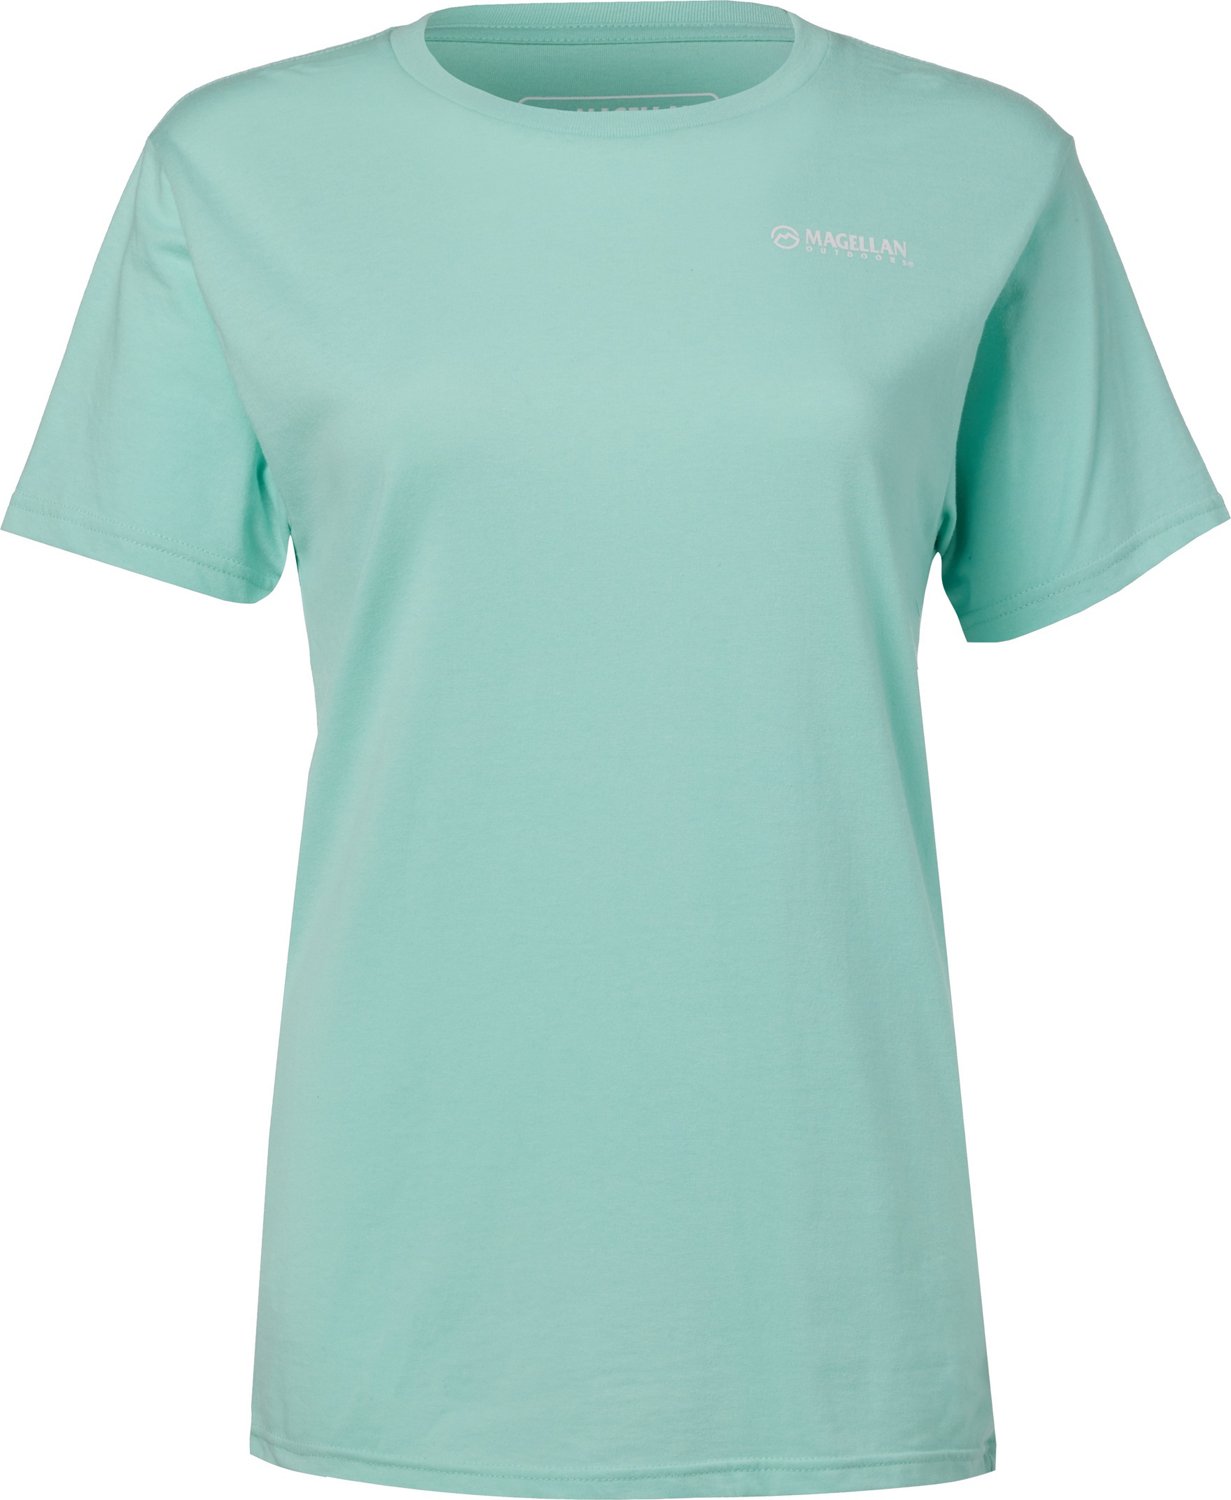 Magellan Outdoors Women's Southern Beach T-shirt                                                                                 - view number 2